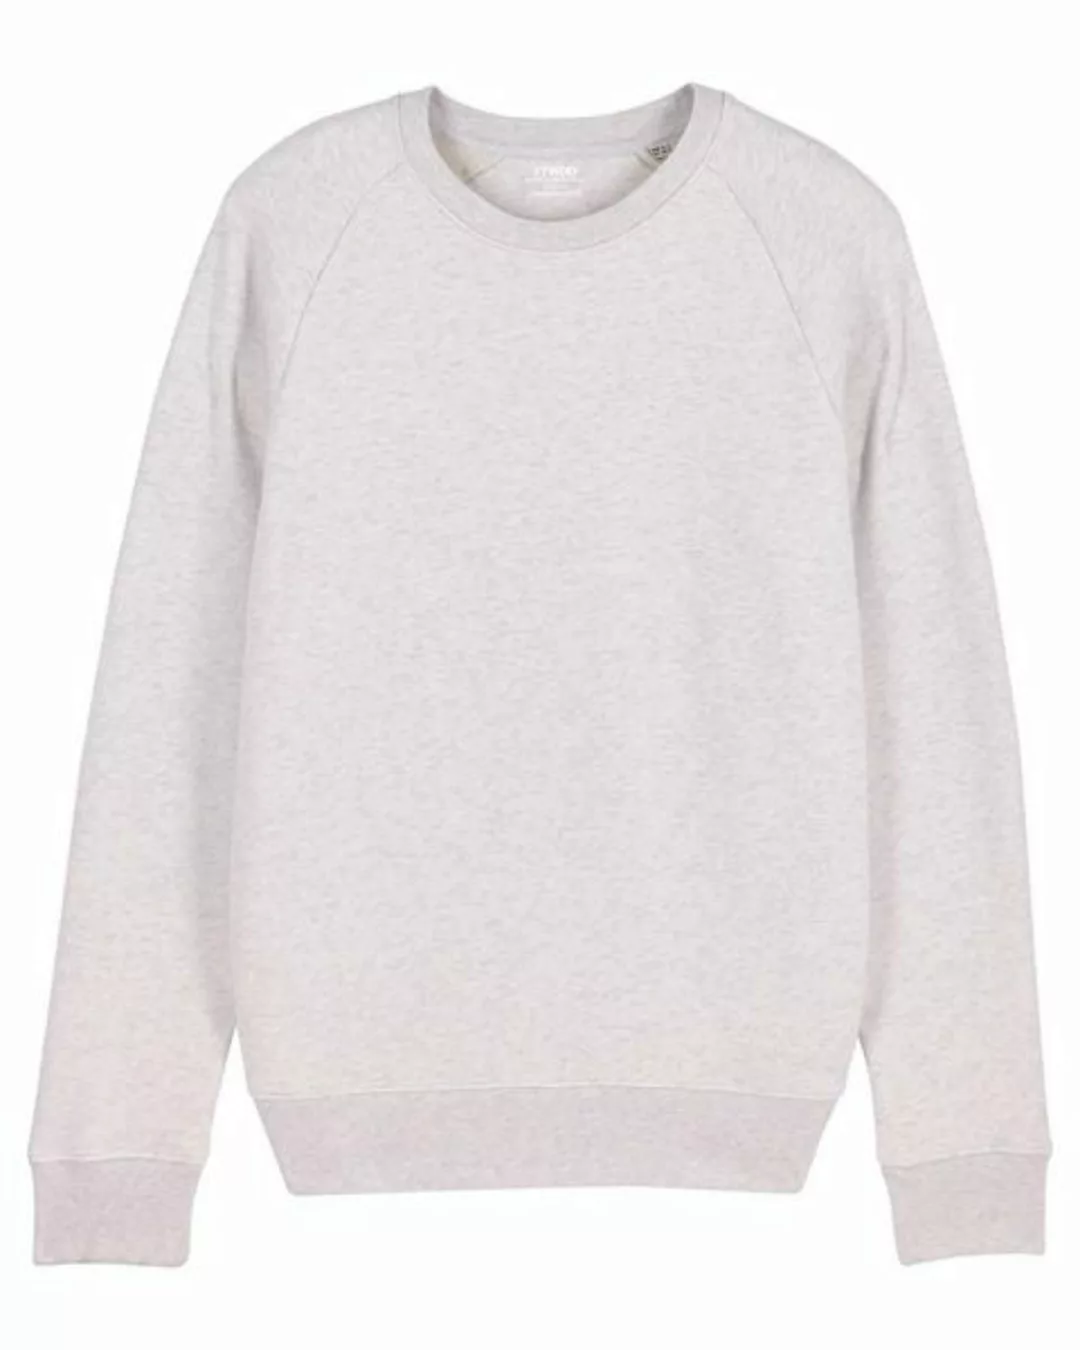 Basic Sweatshirt Herren Meliert, Sweater, Pullover, (Bio&Recycelt) günstig online kaufen